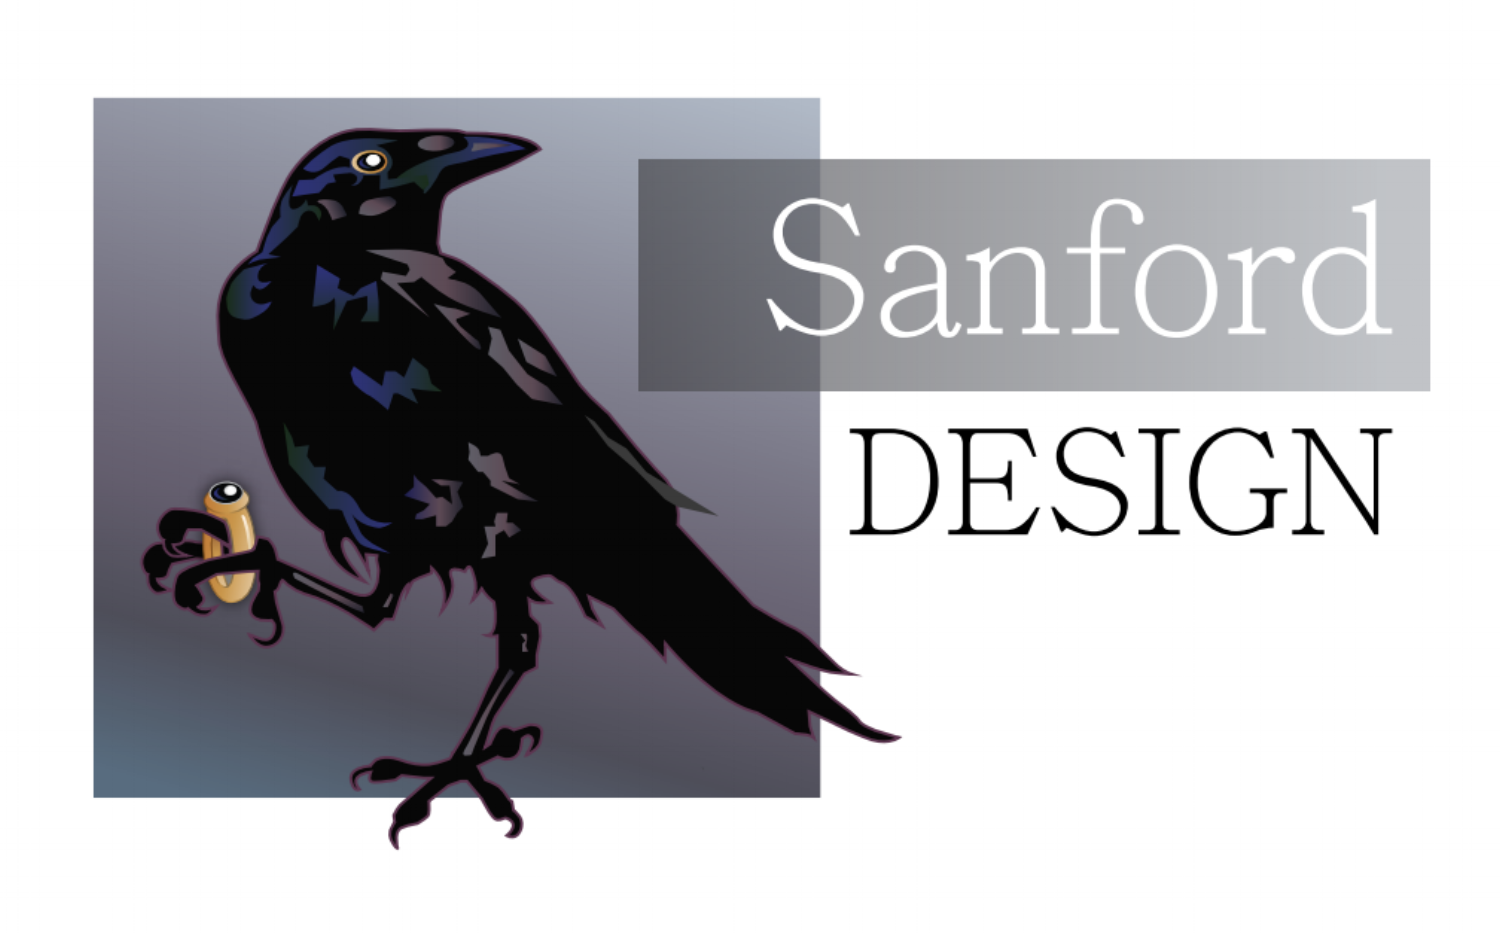 Sanford Design